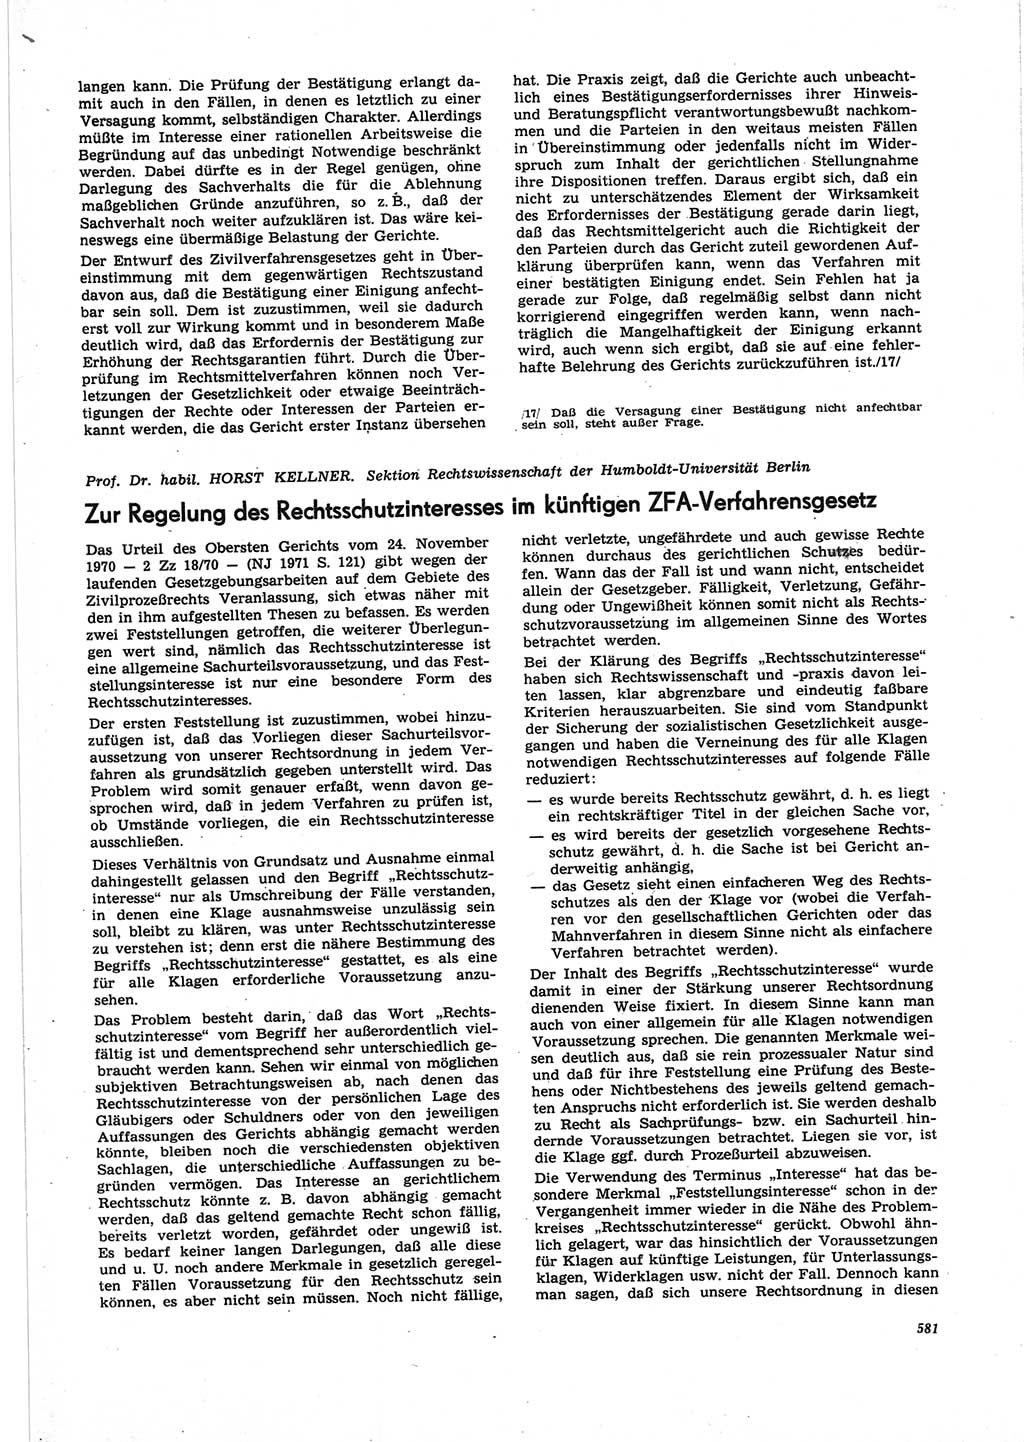 Neue Justiz (NJ), Zeitschrift für Recht und Rechtswissenschaft [Deutsche Demokratische Republik (DDR)], 25. Jahrgang 1971, Seite 581 (NJ DDR 1971, S. 581)